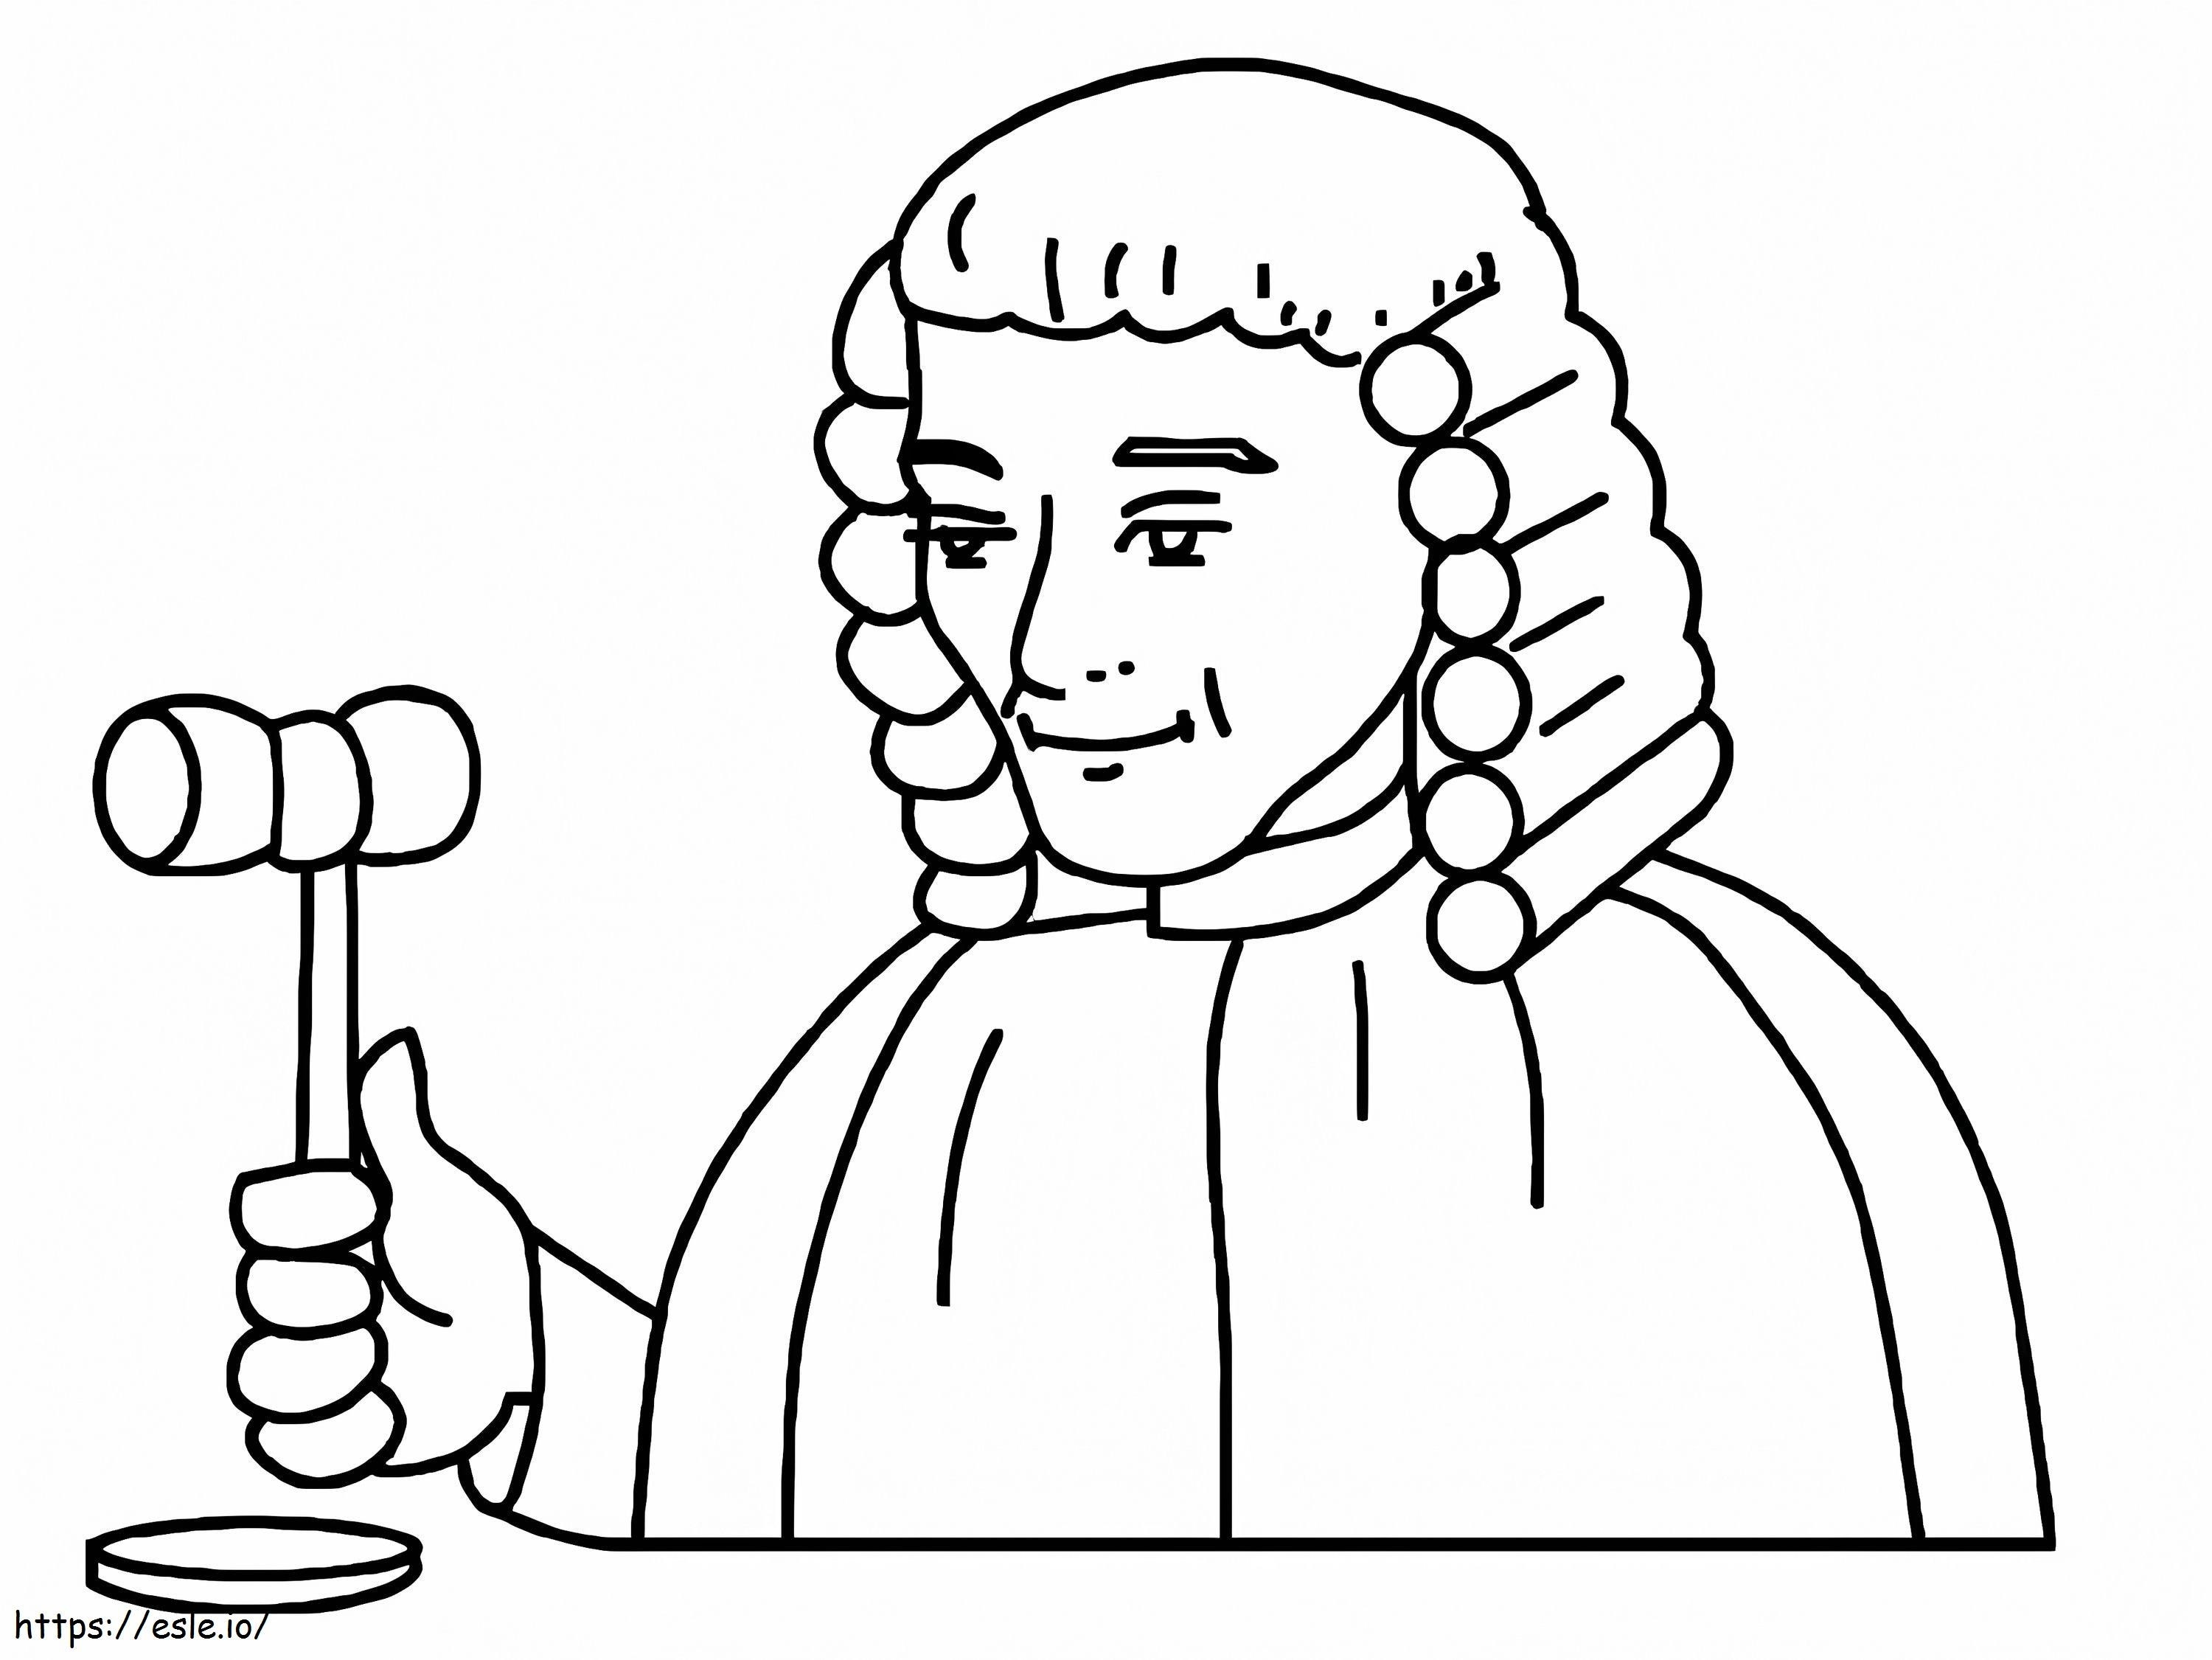 O juiz está sorrindo para colorir